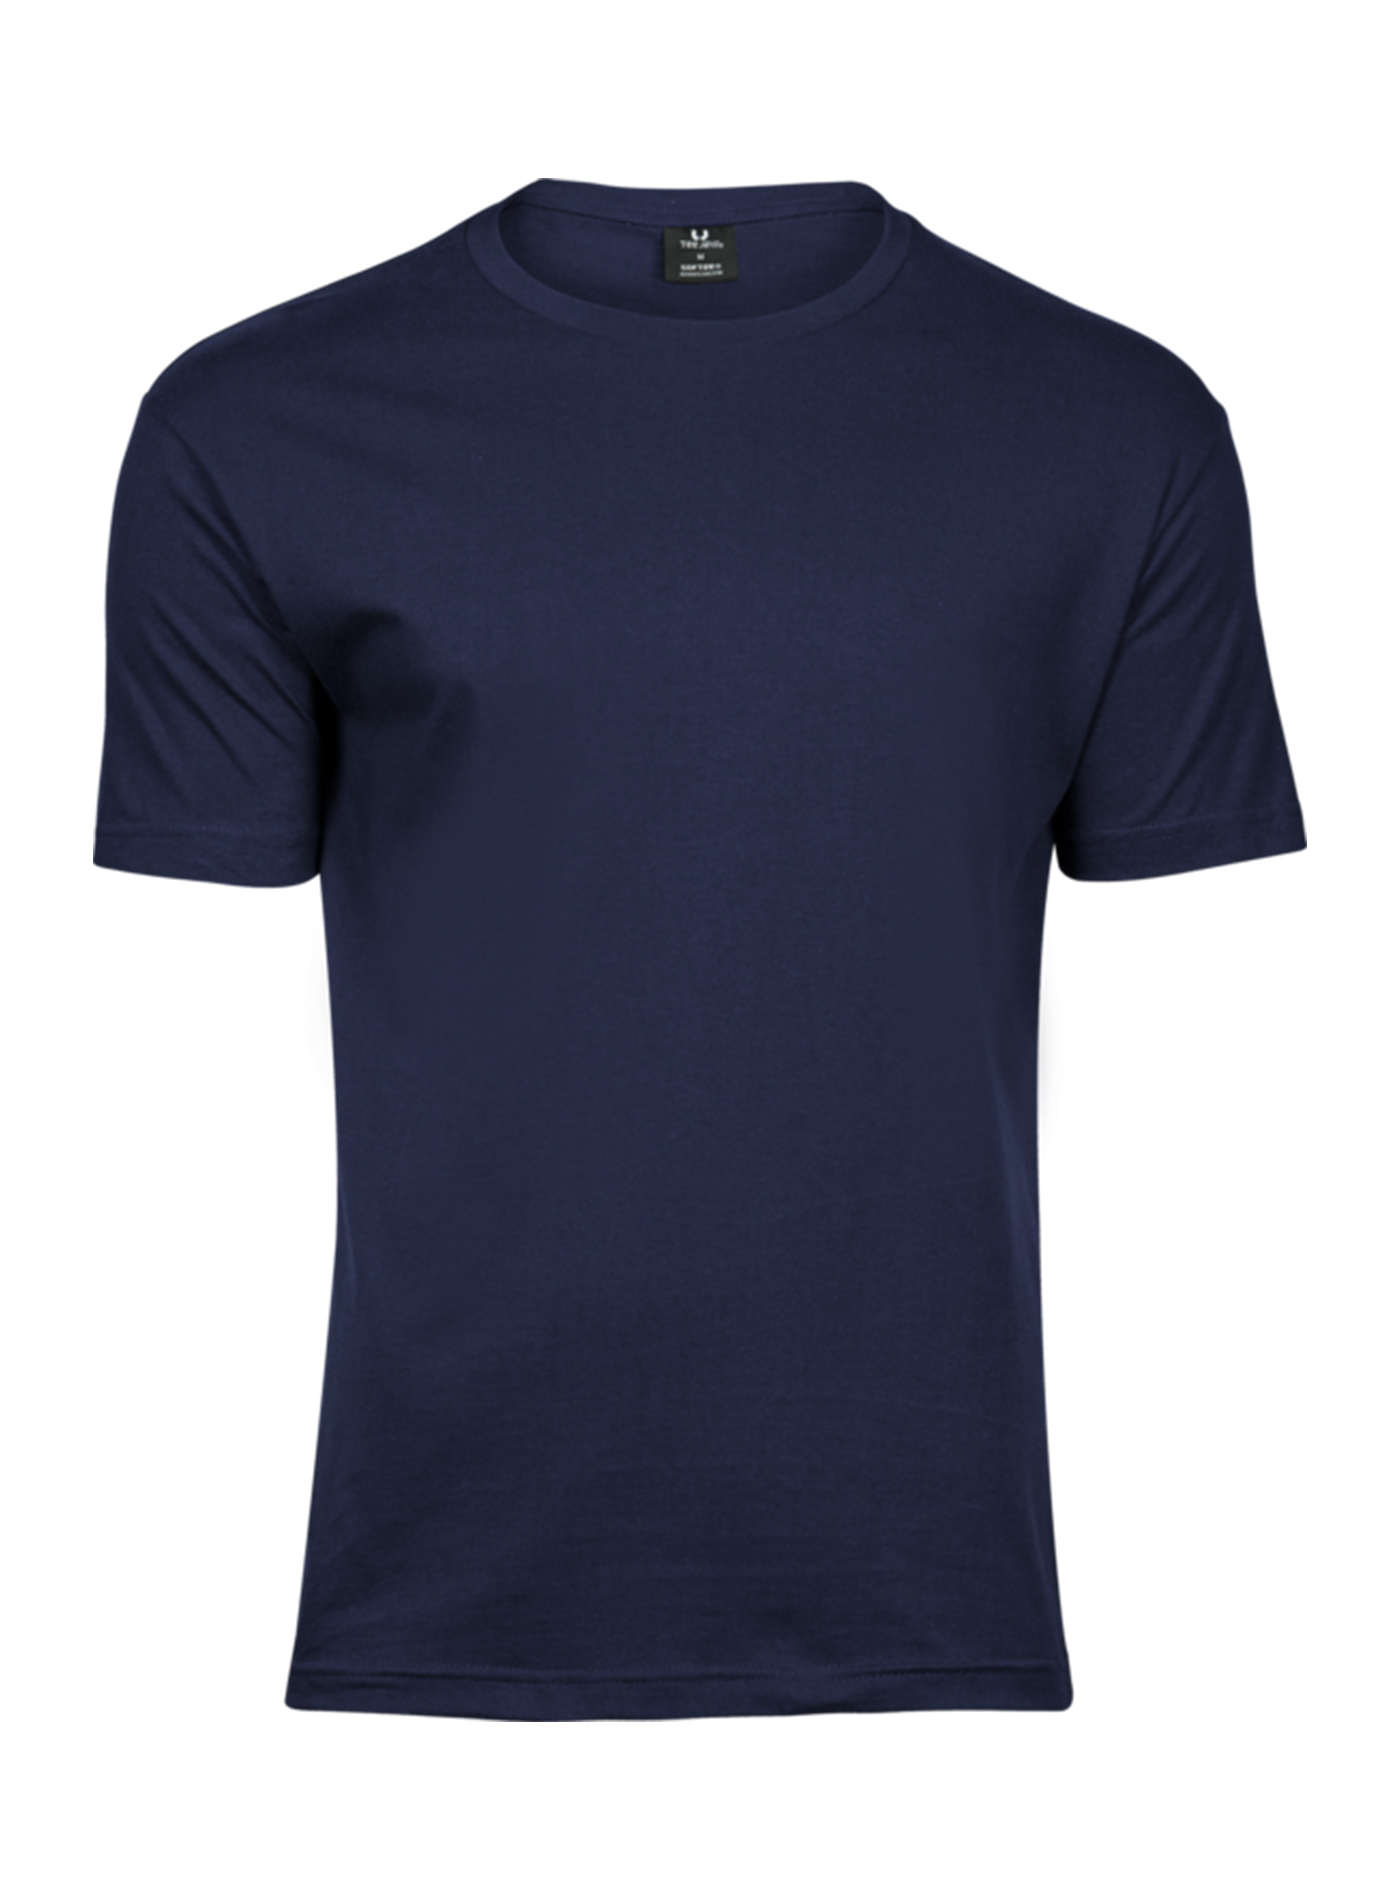 Pánské tričko Fashion Tee Jays - Námořní modrá L